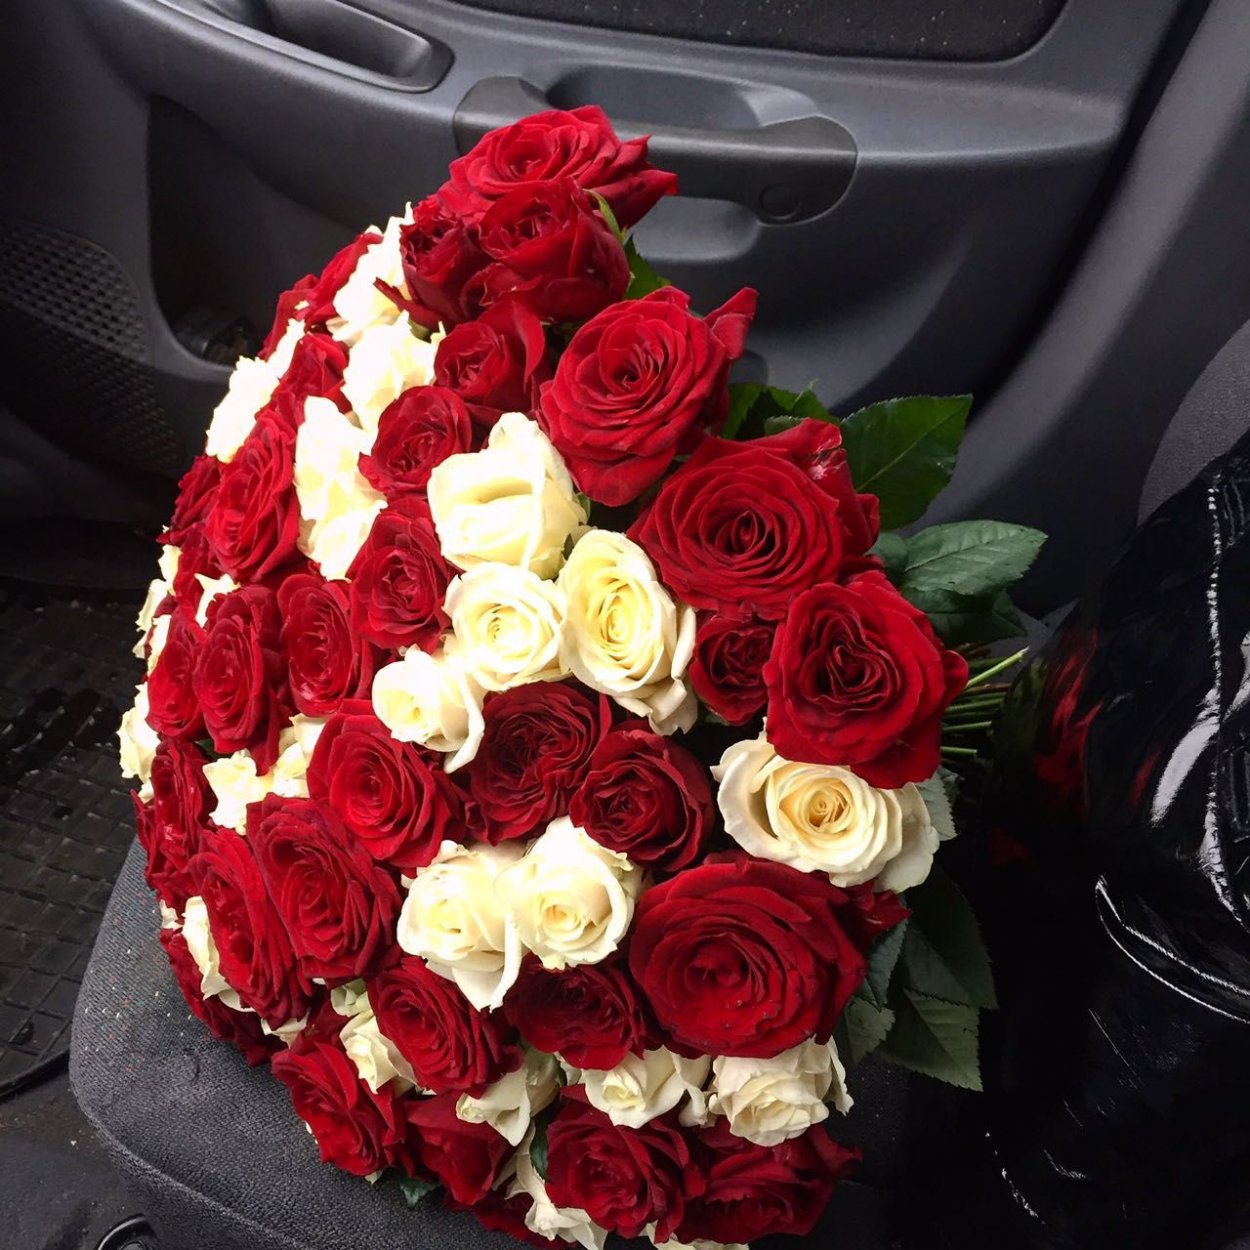 Фото цветы в машине на сиденье фото